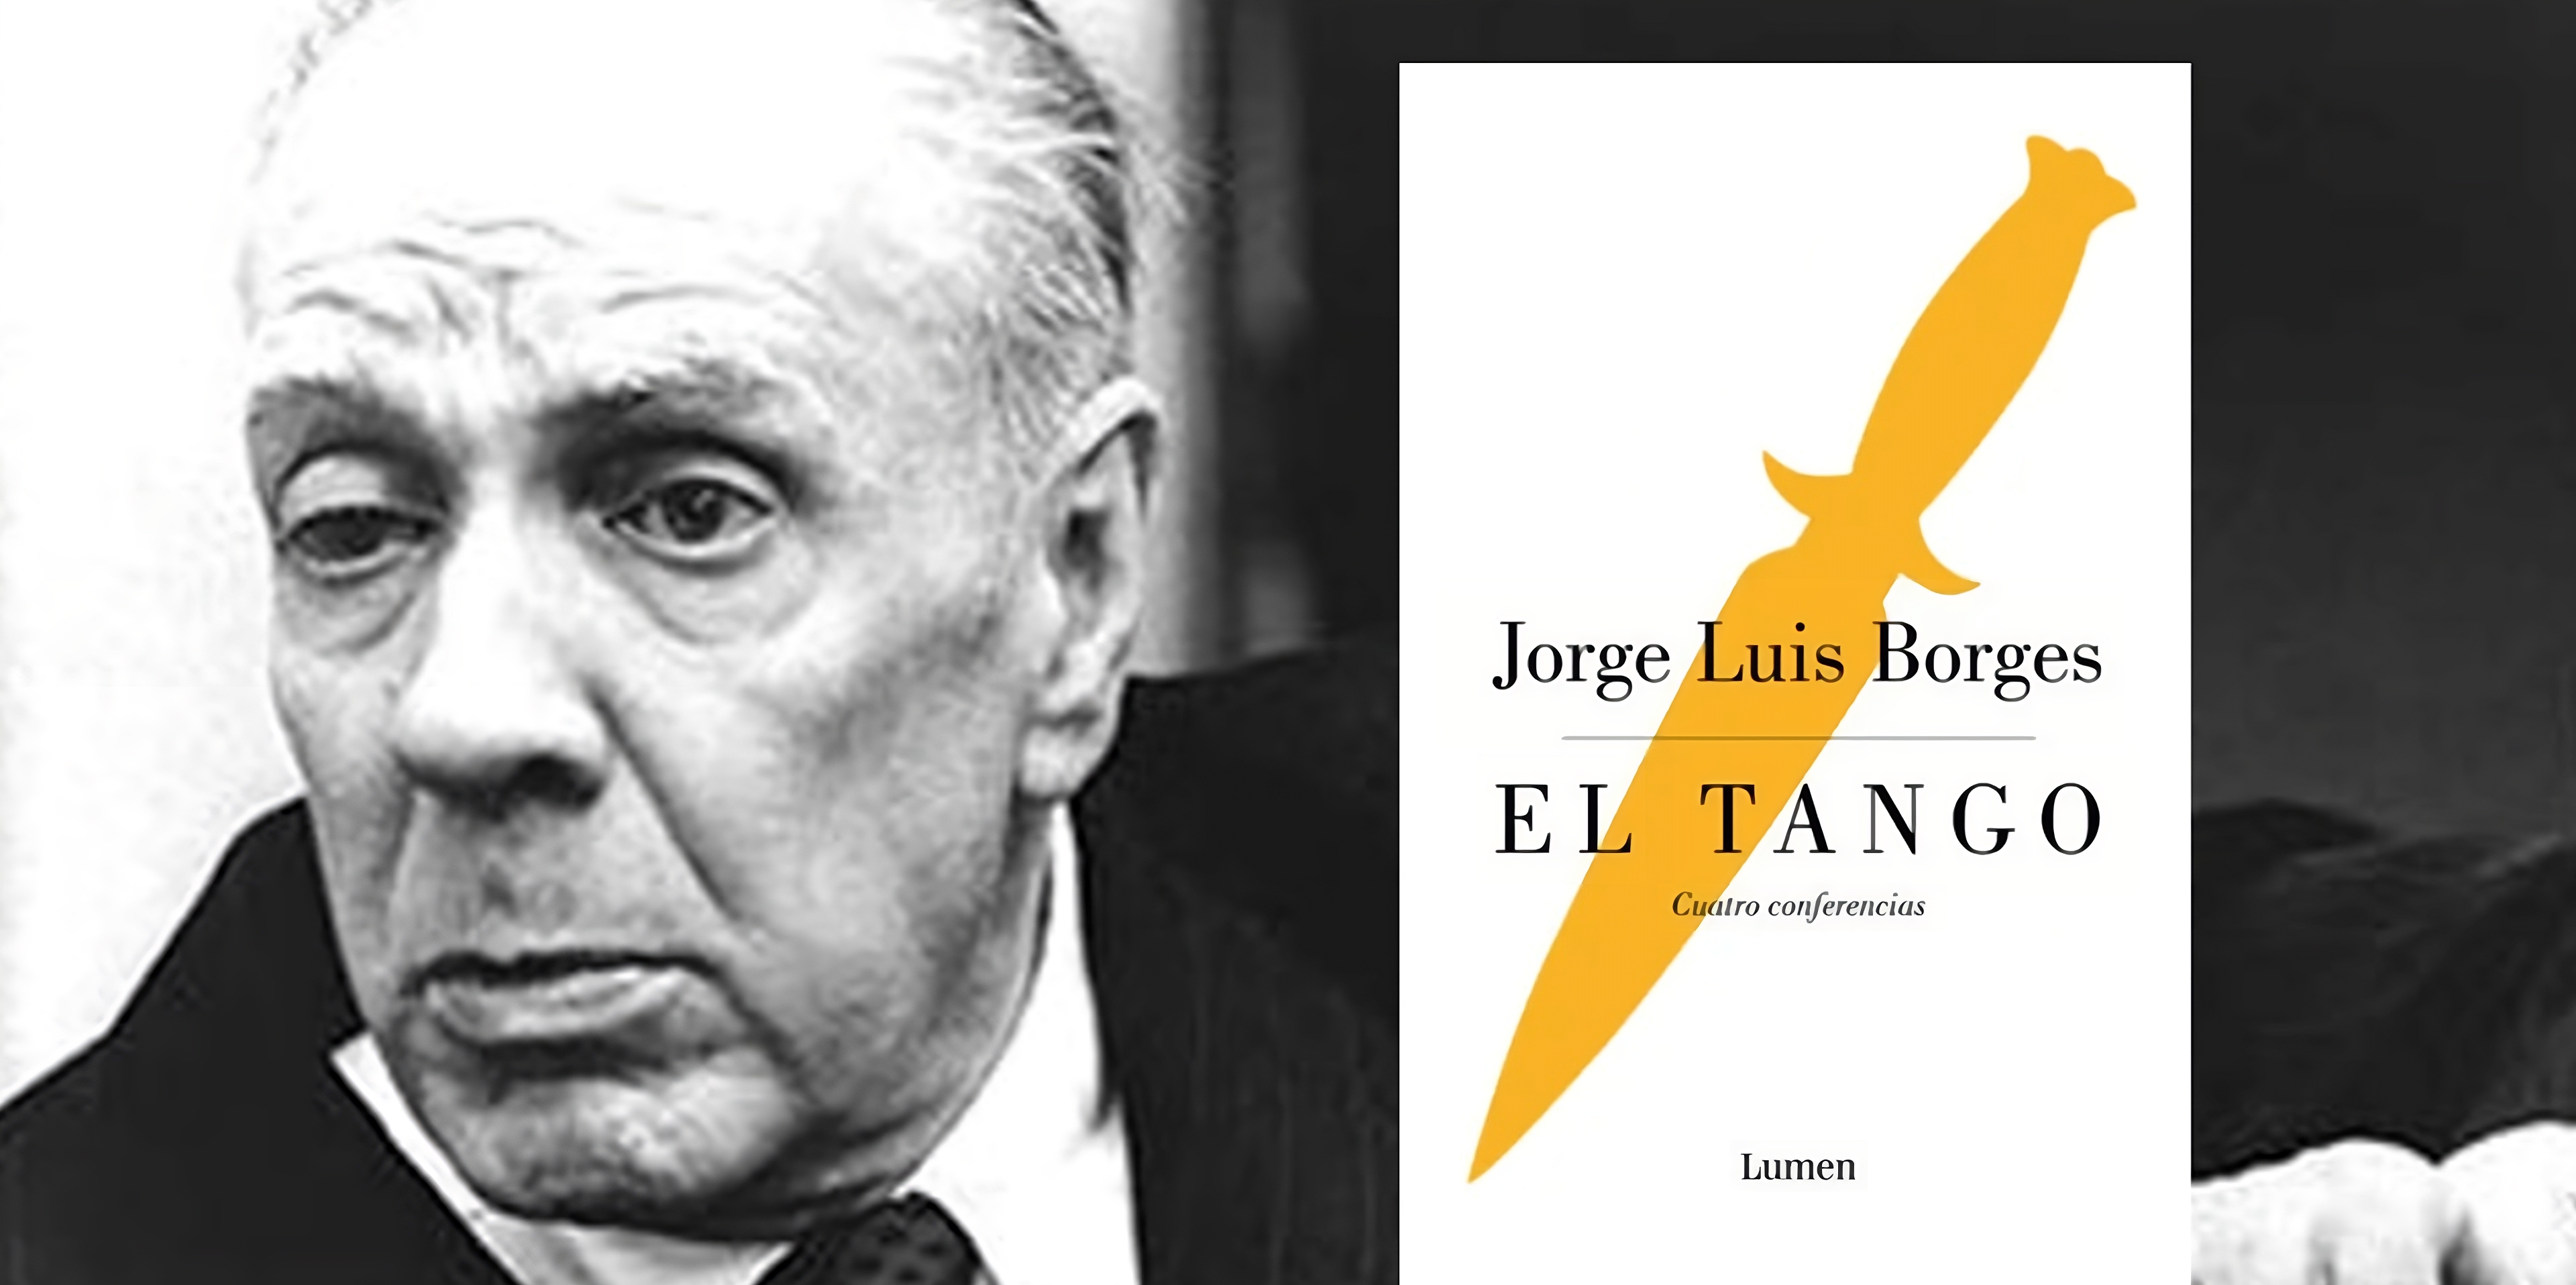 Las cuatro conferencias de Jorge Luis Borges sobre el tango reunidas en este libro.